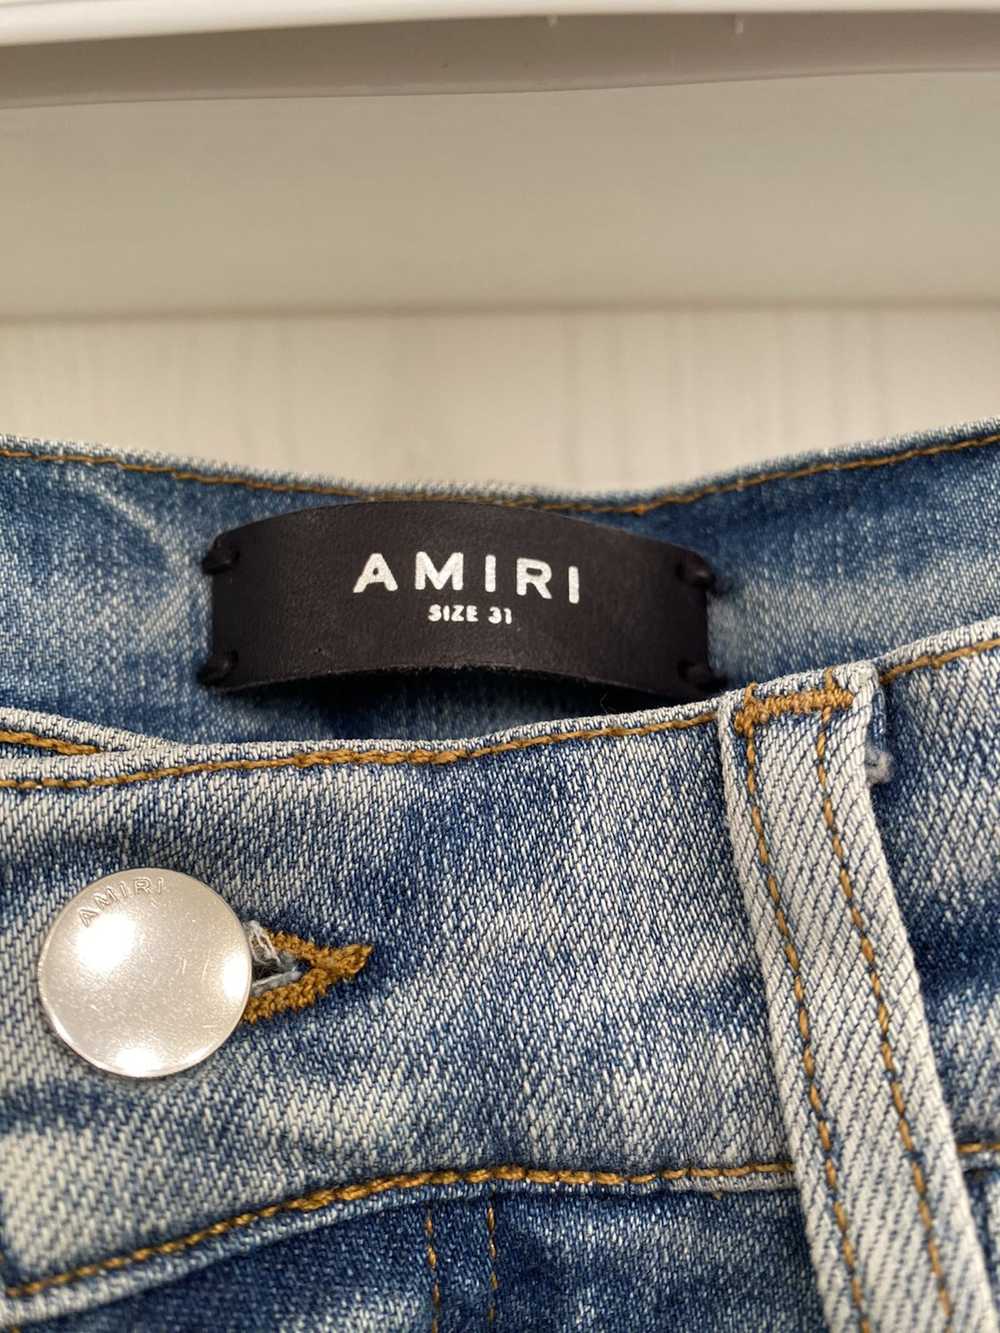 Amiri Amiri MX1 Bandana Patch Jeans Indigo US 31 - image 2